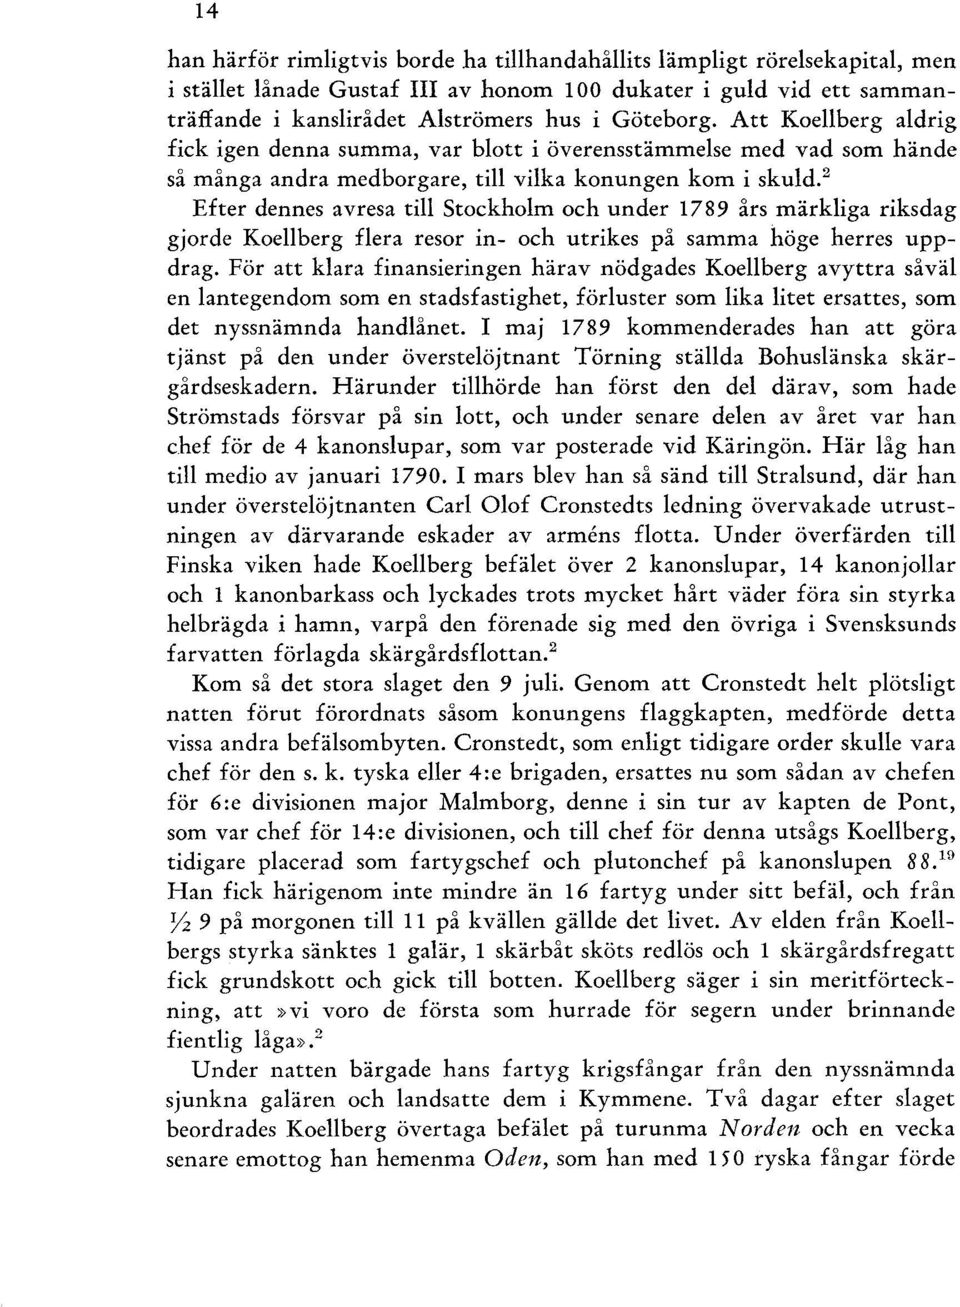 2 Efter dennes avresa till Stockholm och under 1789 års märkliga riksdag gjorde Koellberg flera resor in- och utrikes på samma höge herres uppdrag.